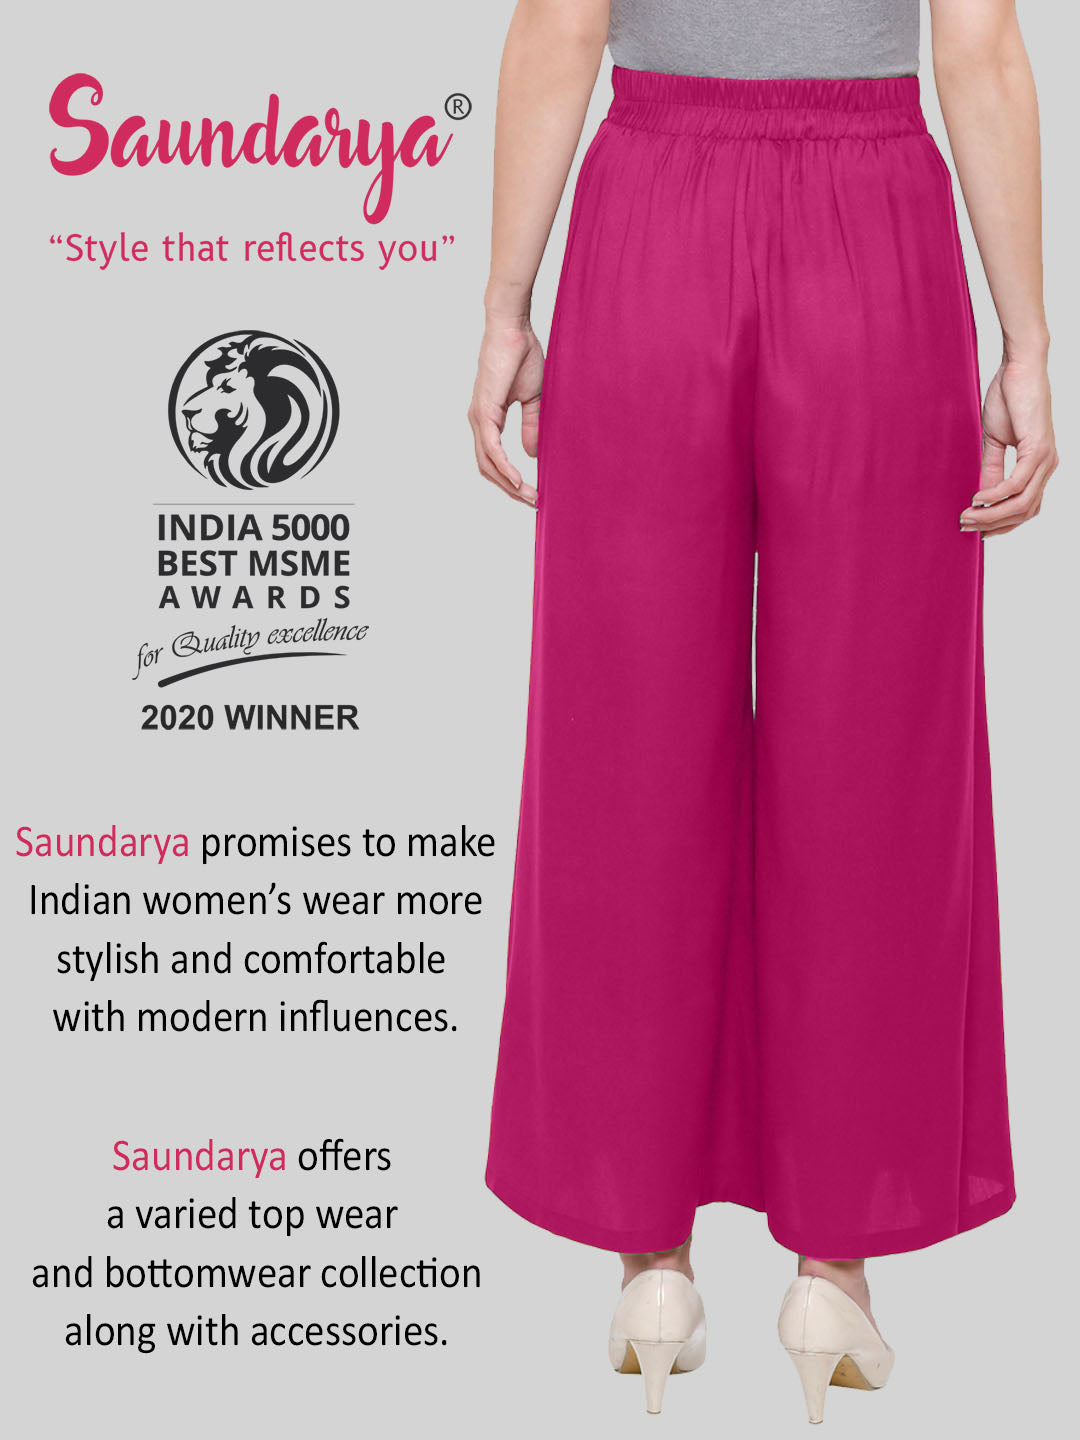 Saundarya Women's Magenta Skirt Palazzos